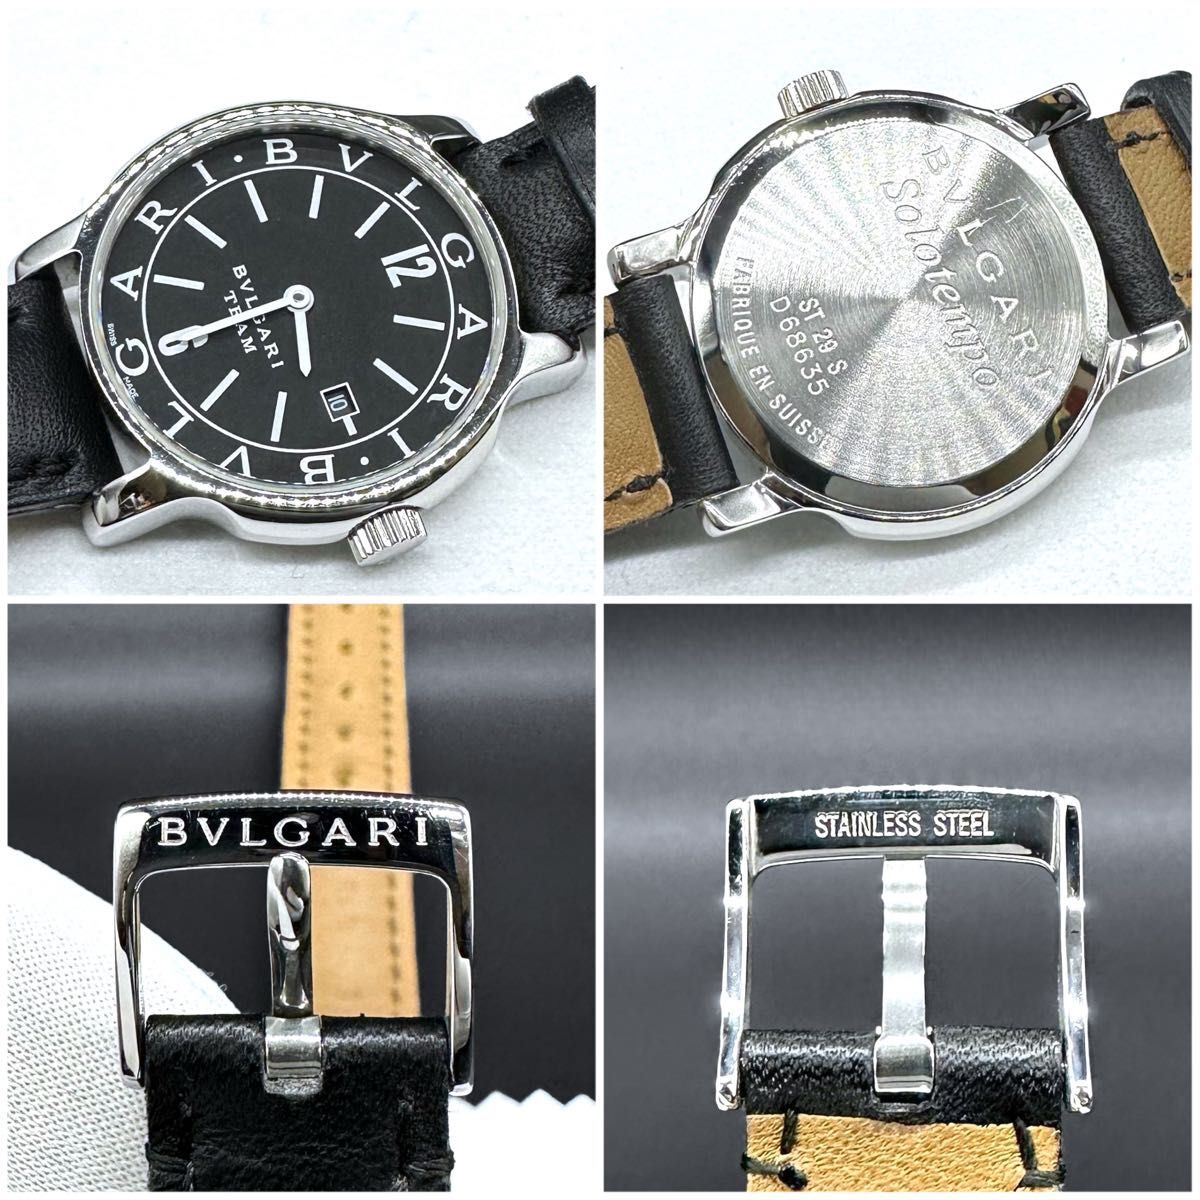 [ очень красивый товар ]BVLGARI Solotempo штат служащих ограничение ST29S наручные часы 